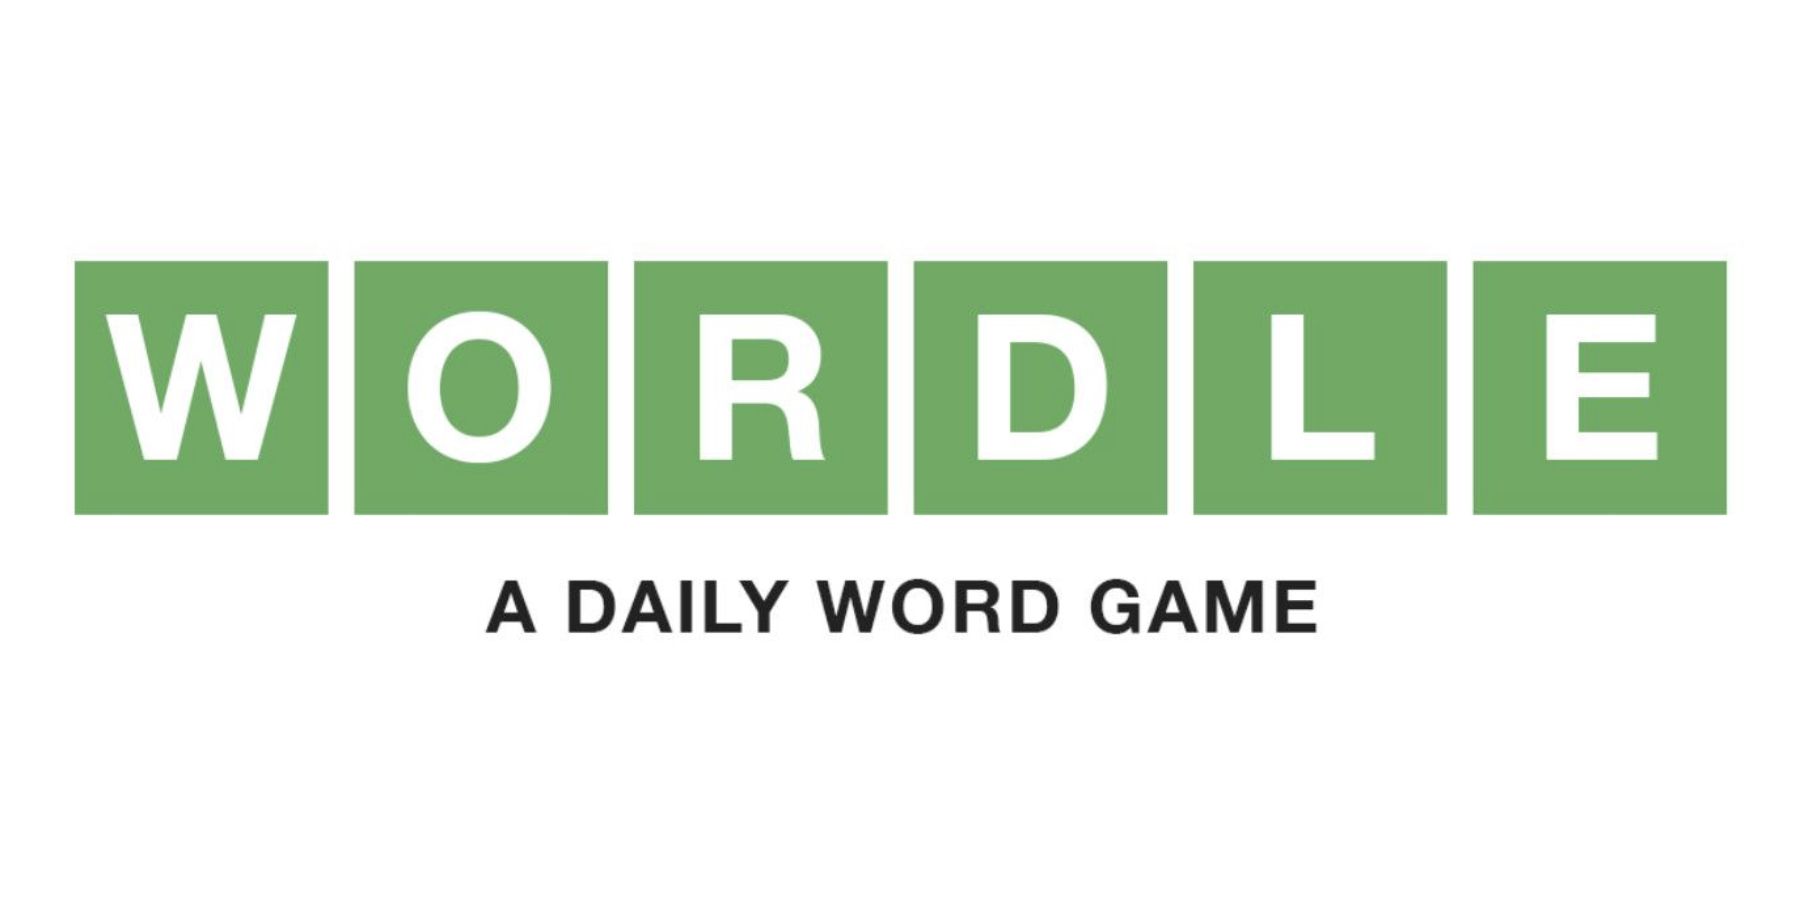 Поклонник Wordle использует реальную версию игры, чтобы показать подарок-сюрприз жены на день рождения